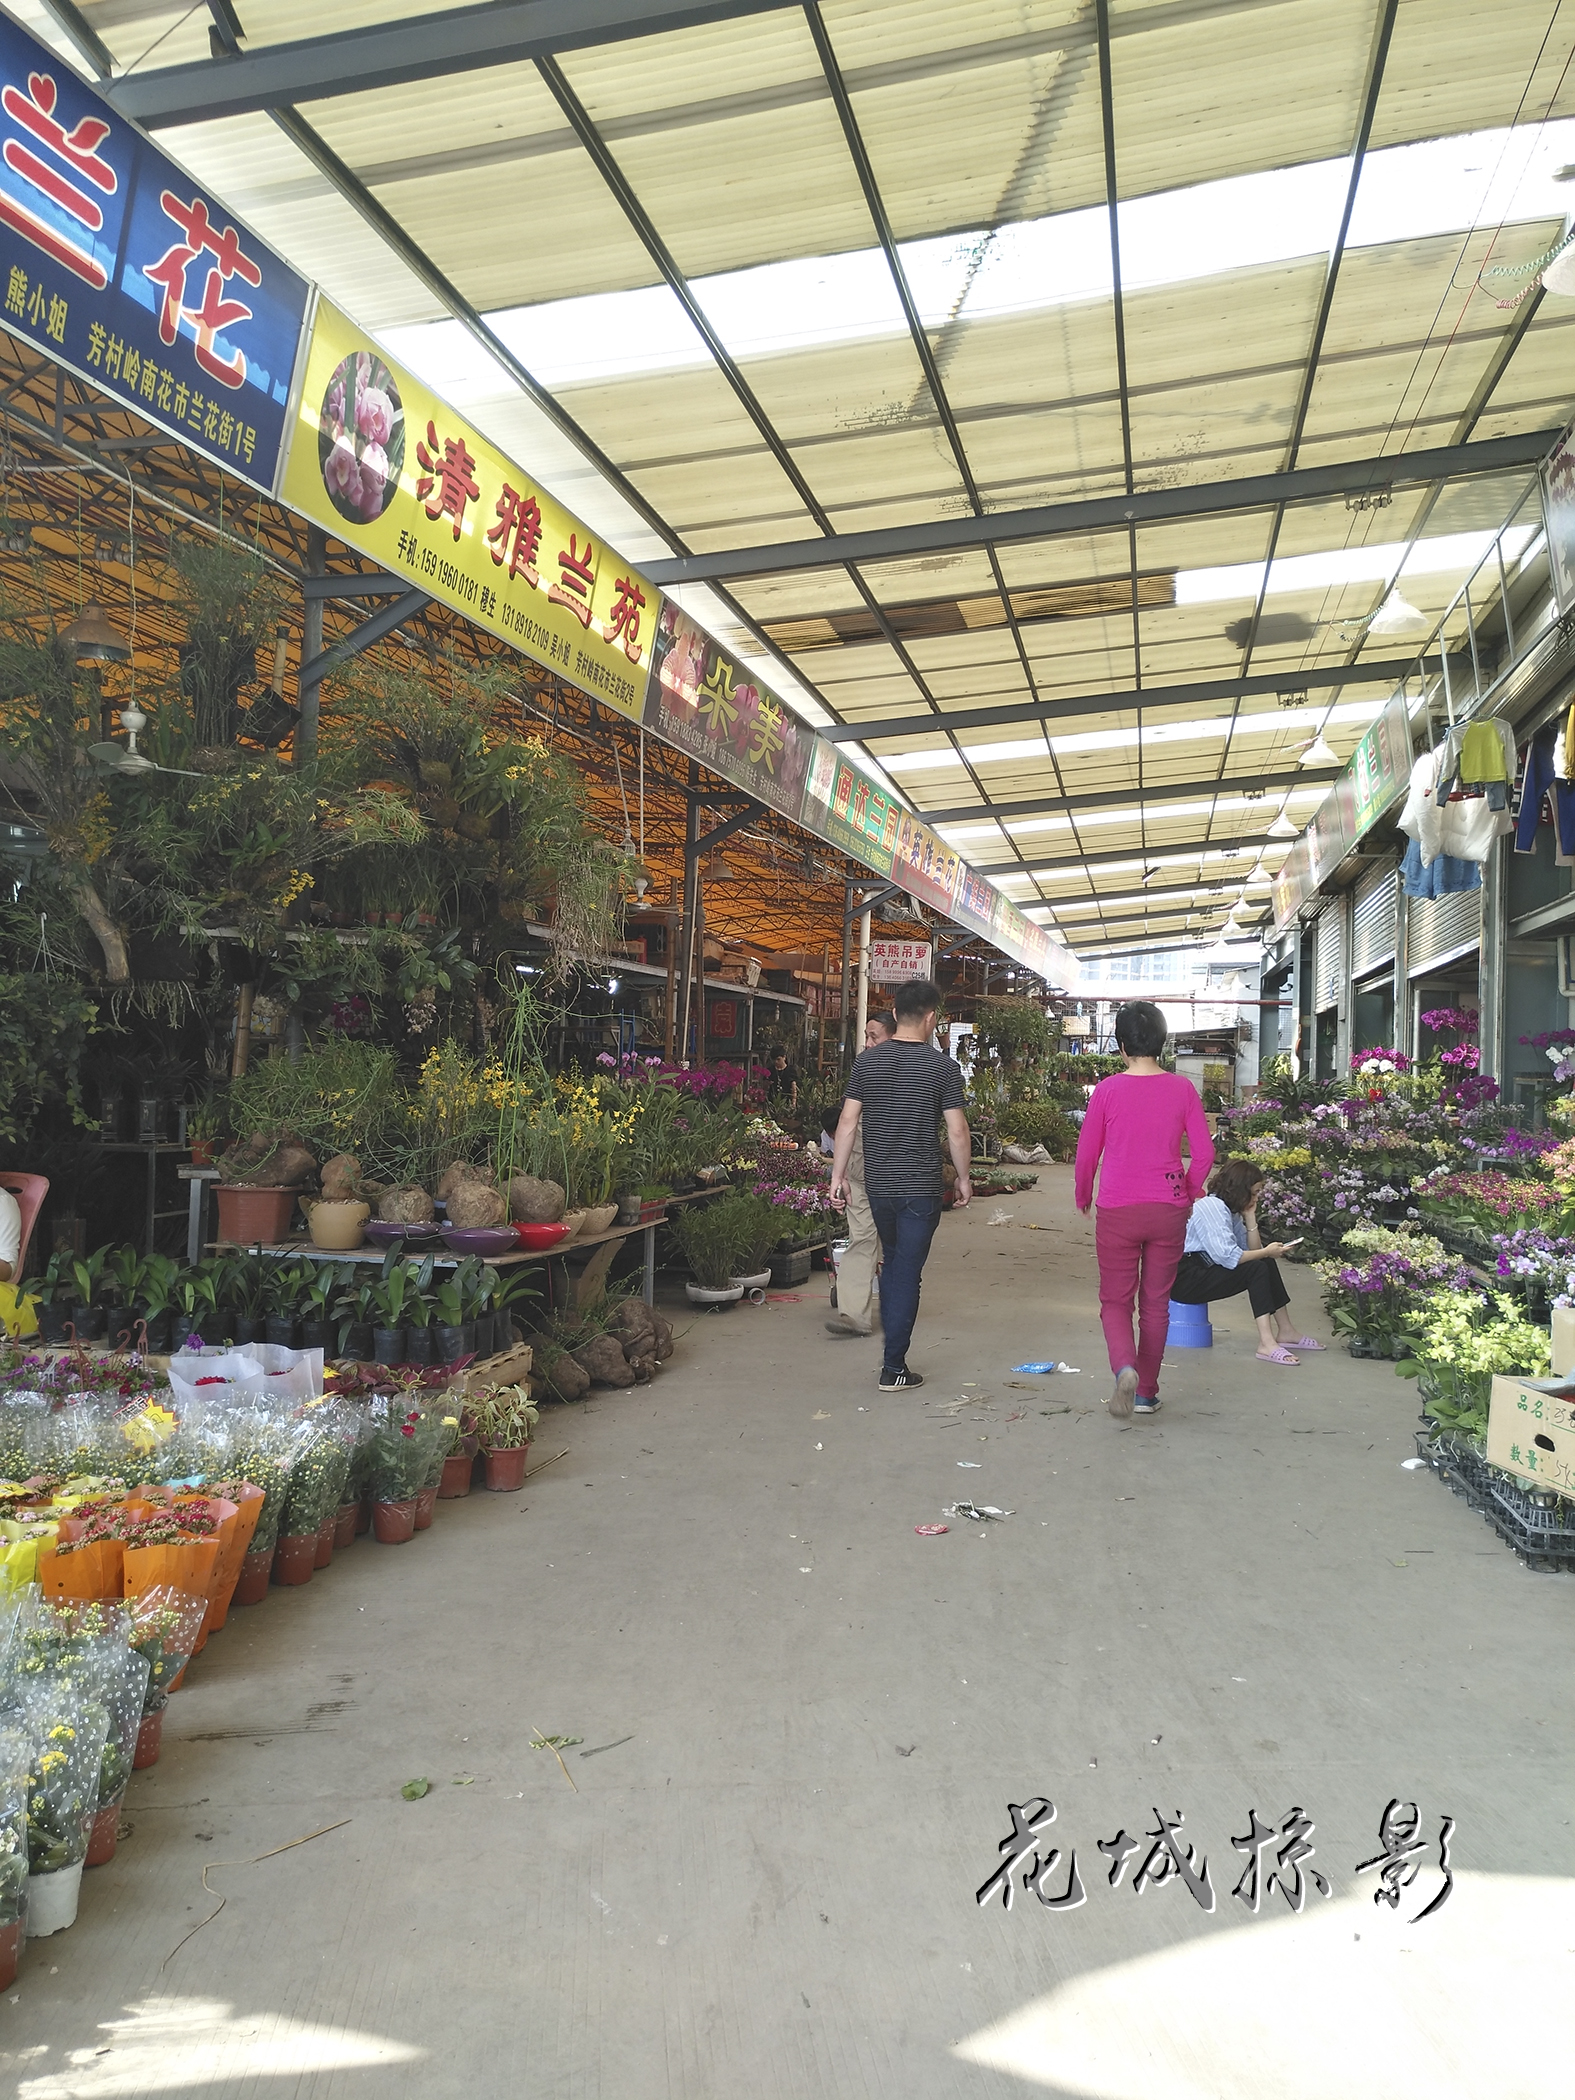 让人收获美丽的地方——广州岭南花卉市场